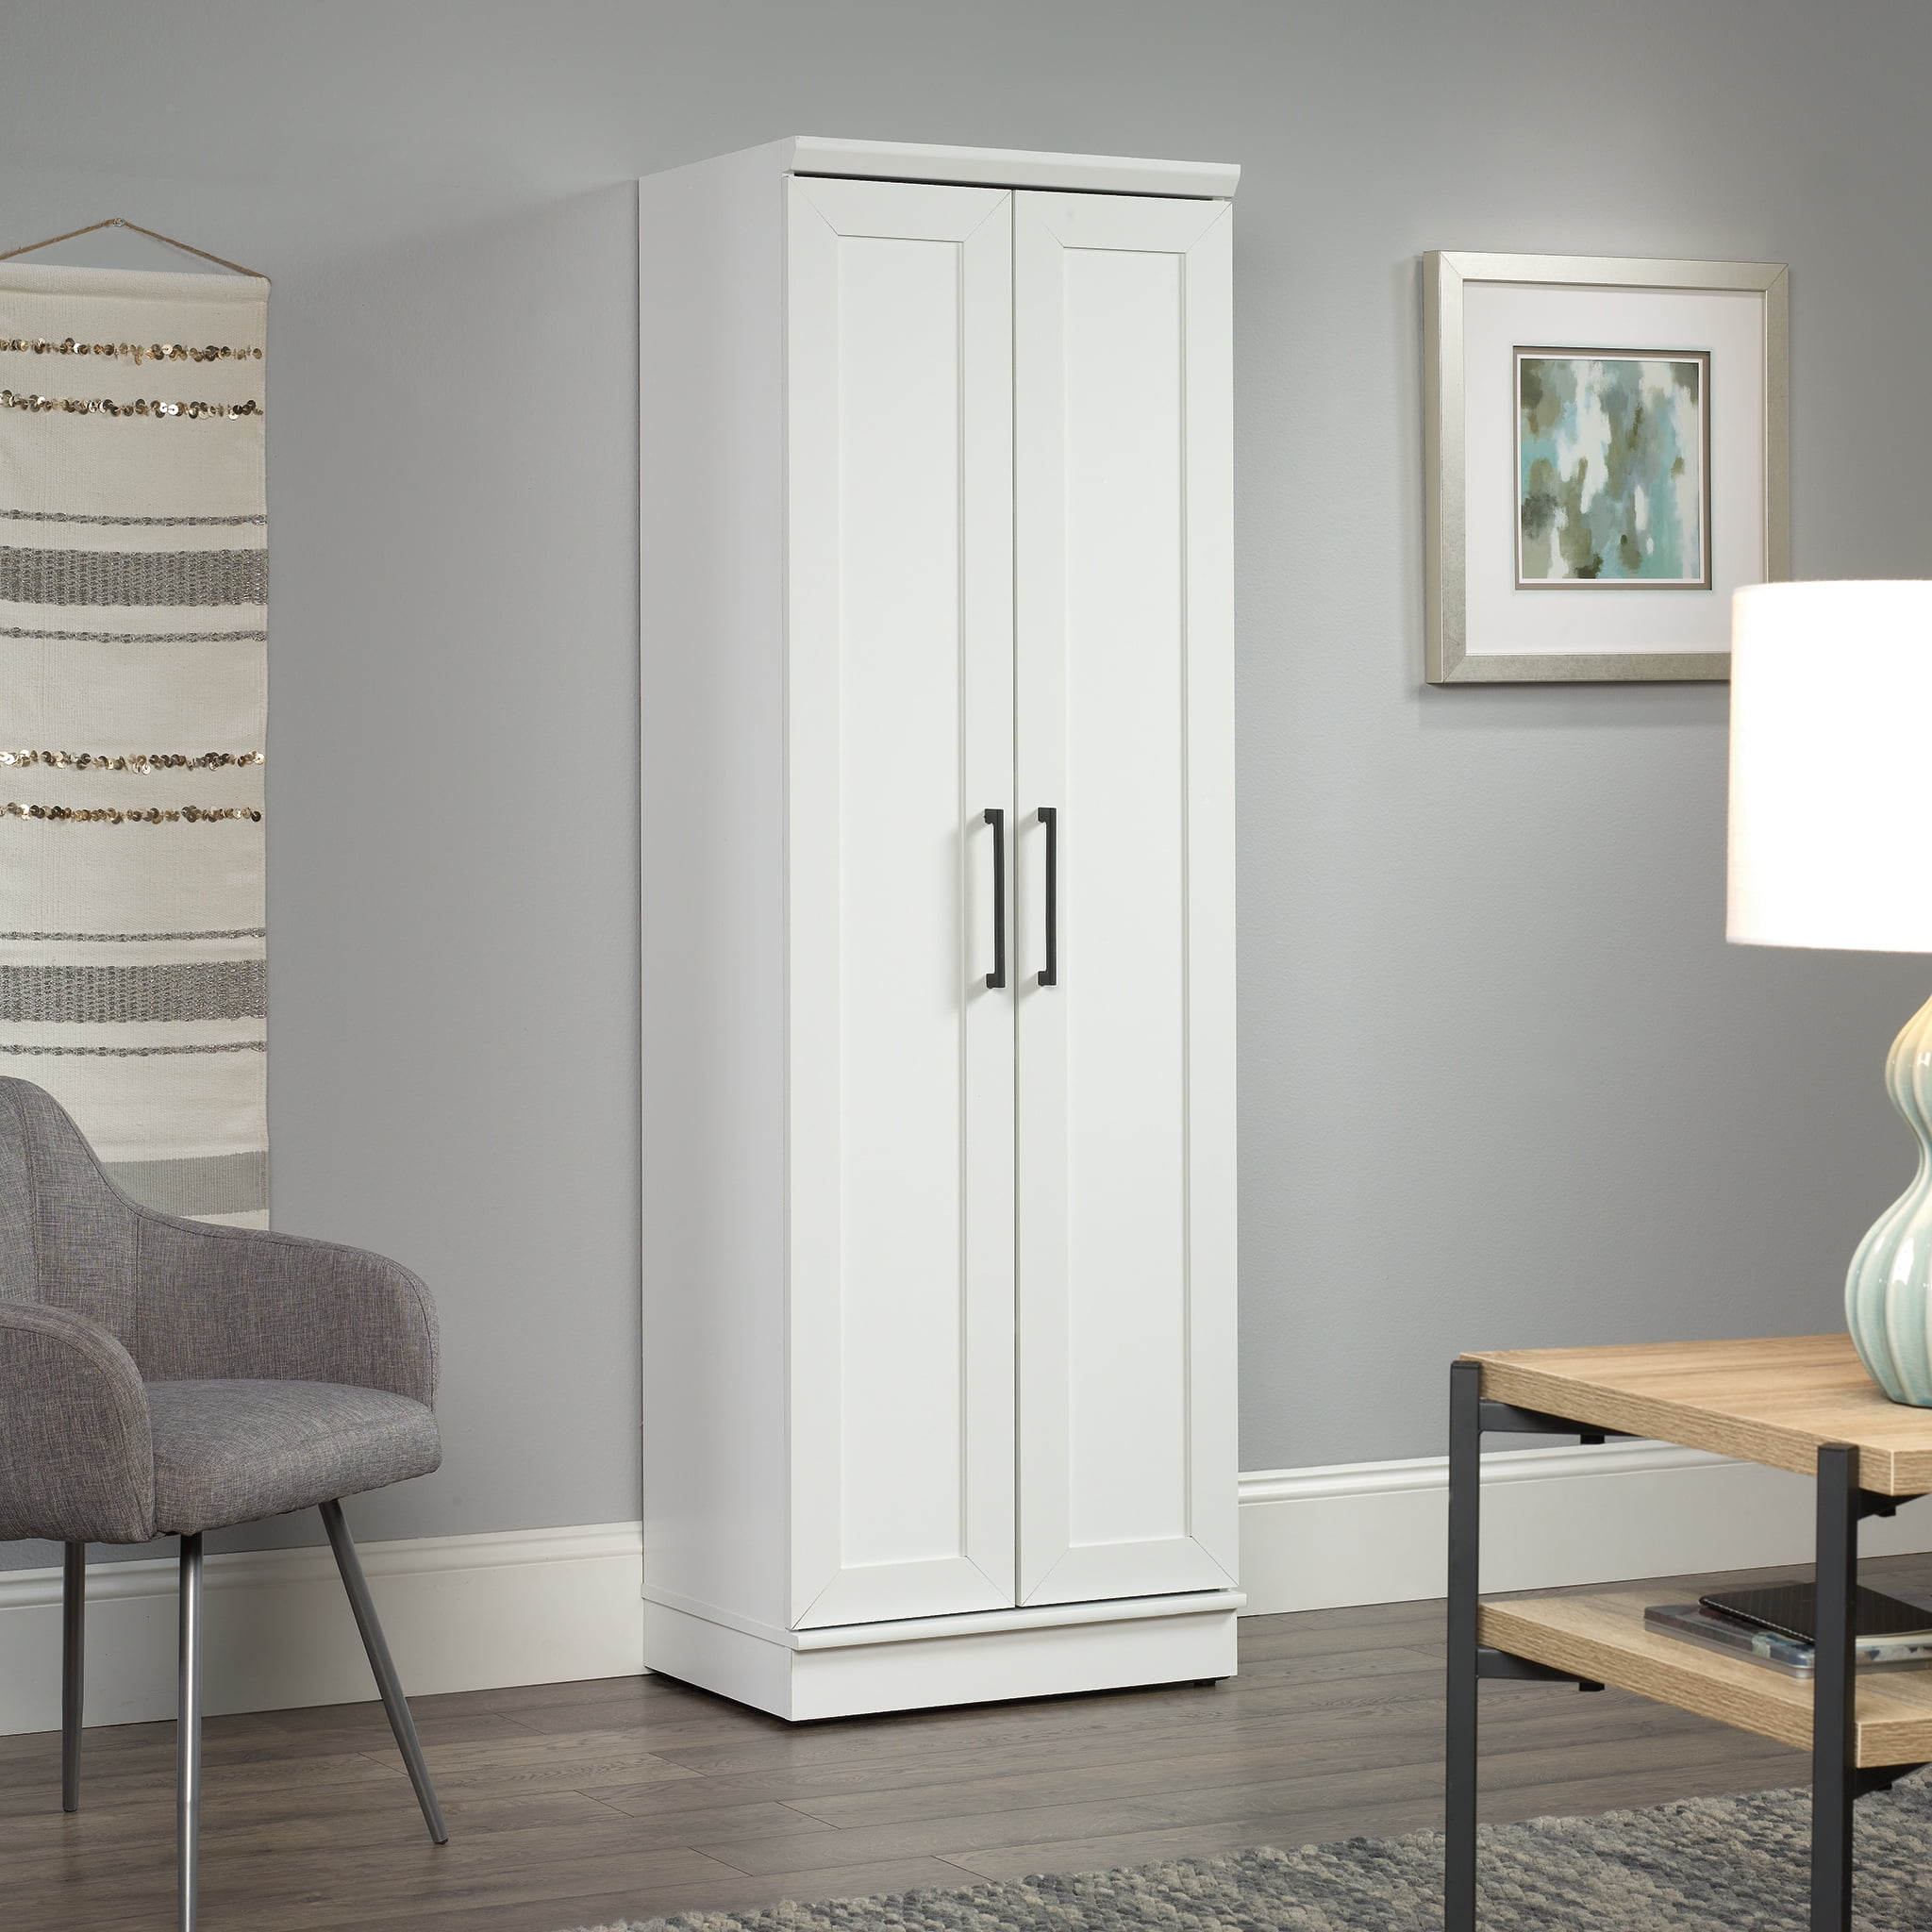 Door Wood Storage Cabinet, Sauder Storage Cabinets With Doors And Shelves